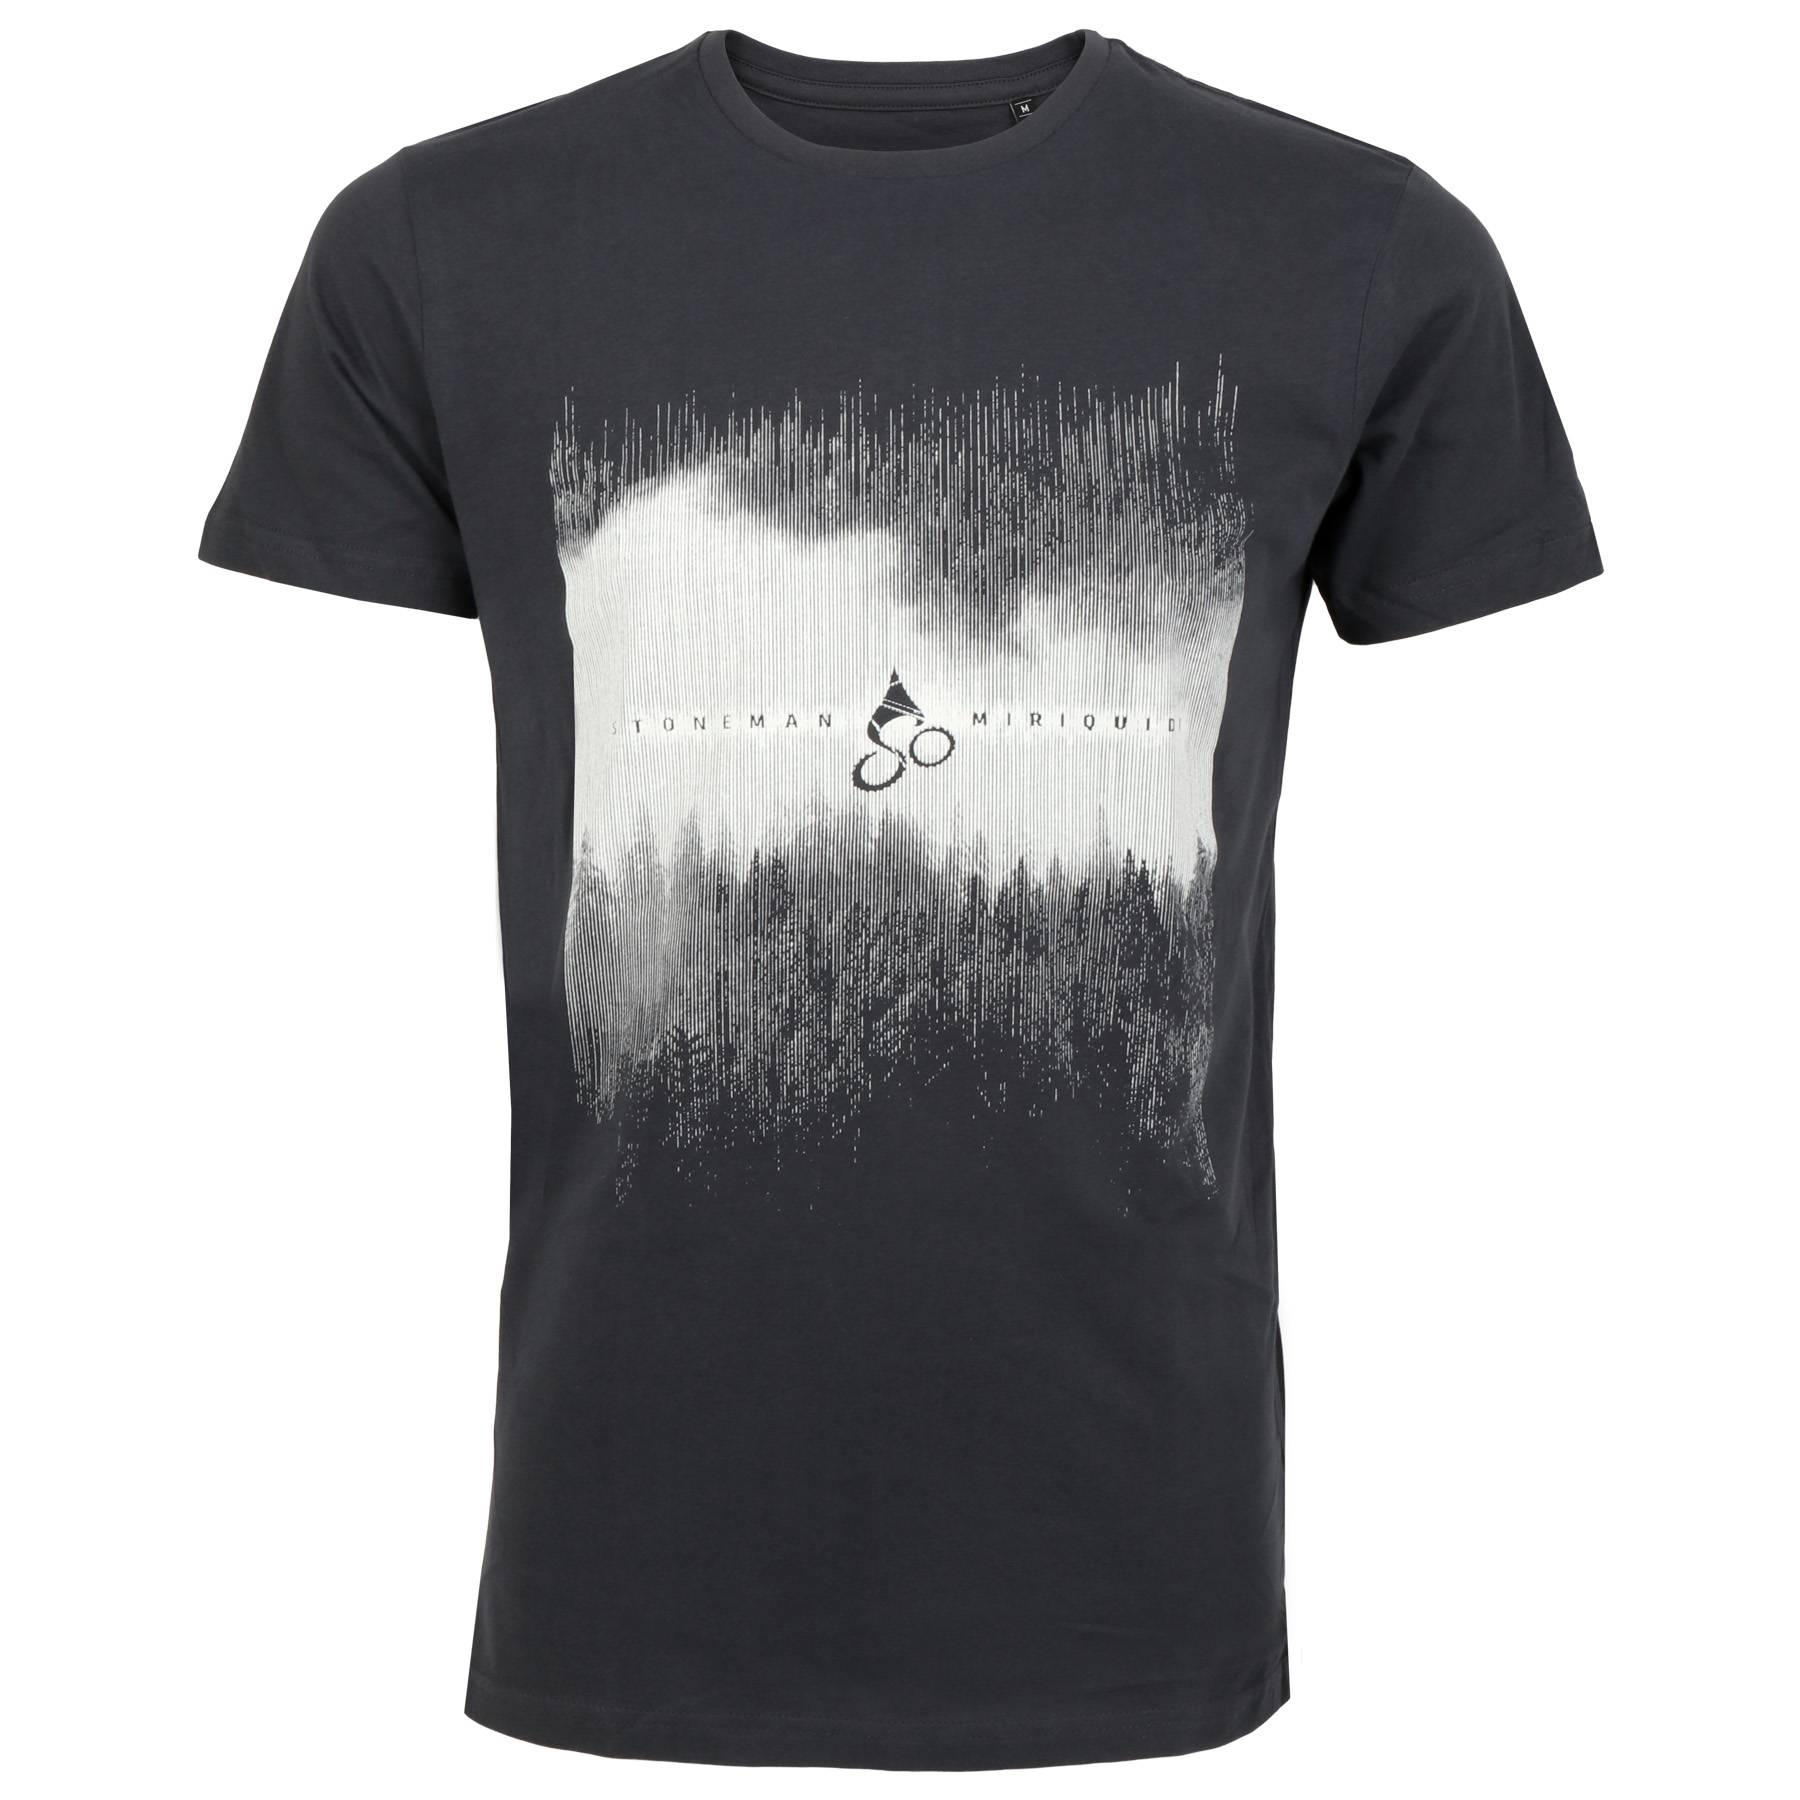 Produktbild von Stoneman Miriquidi »Dunkelwald« Männer T-Shirt - anthrazit